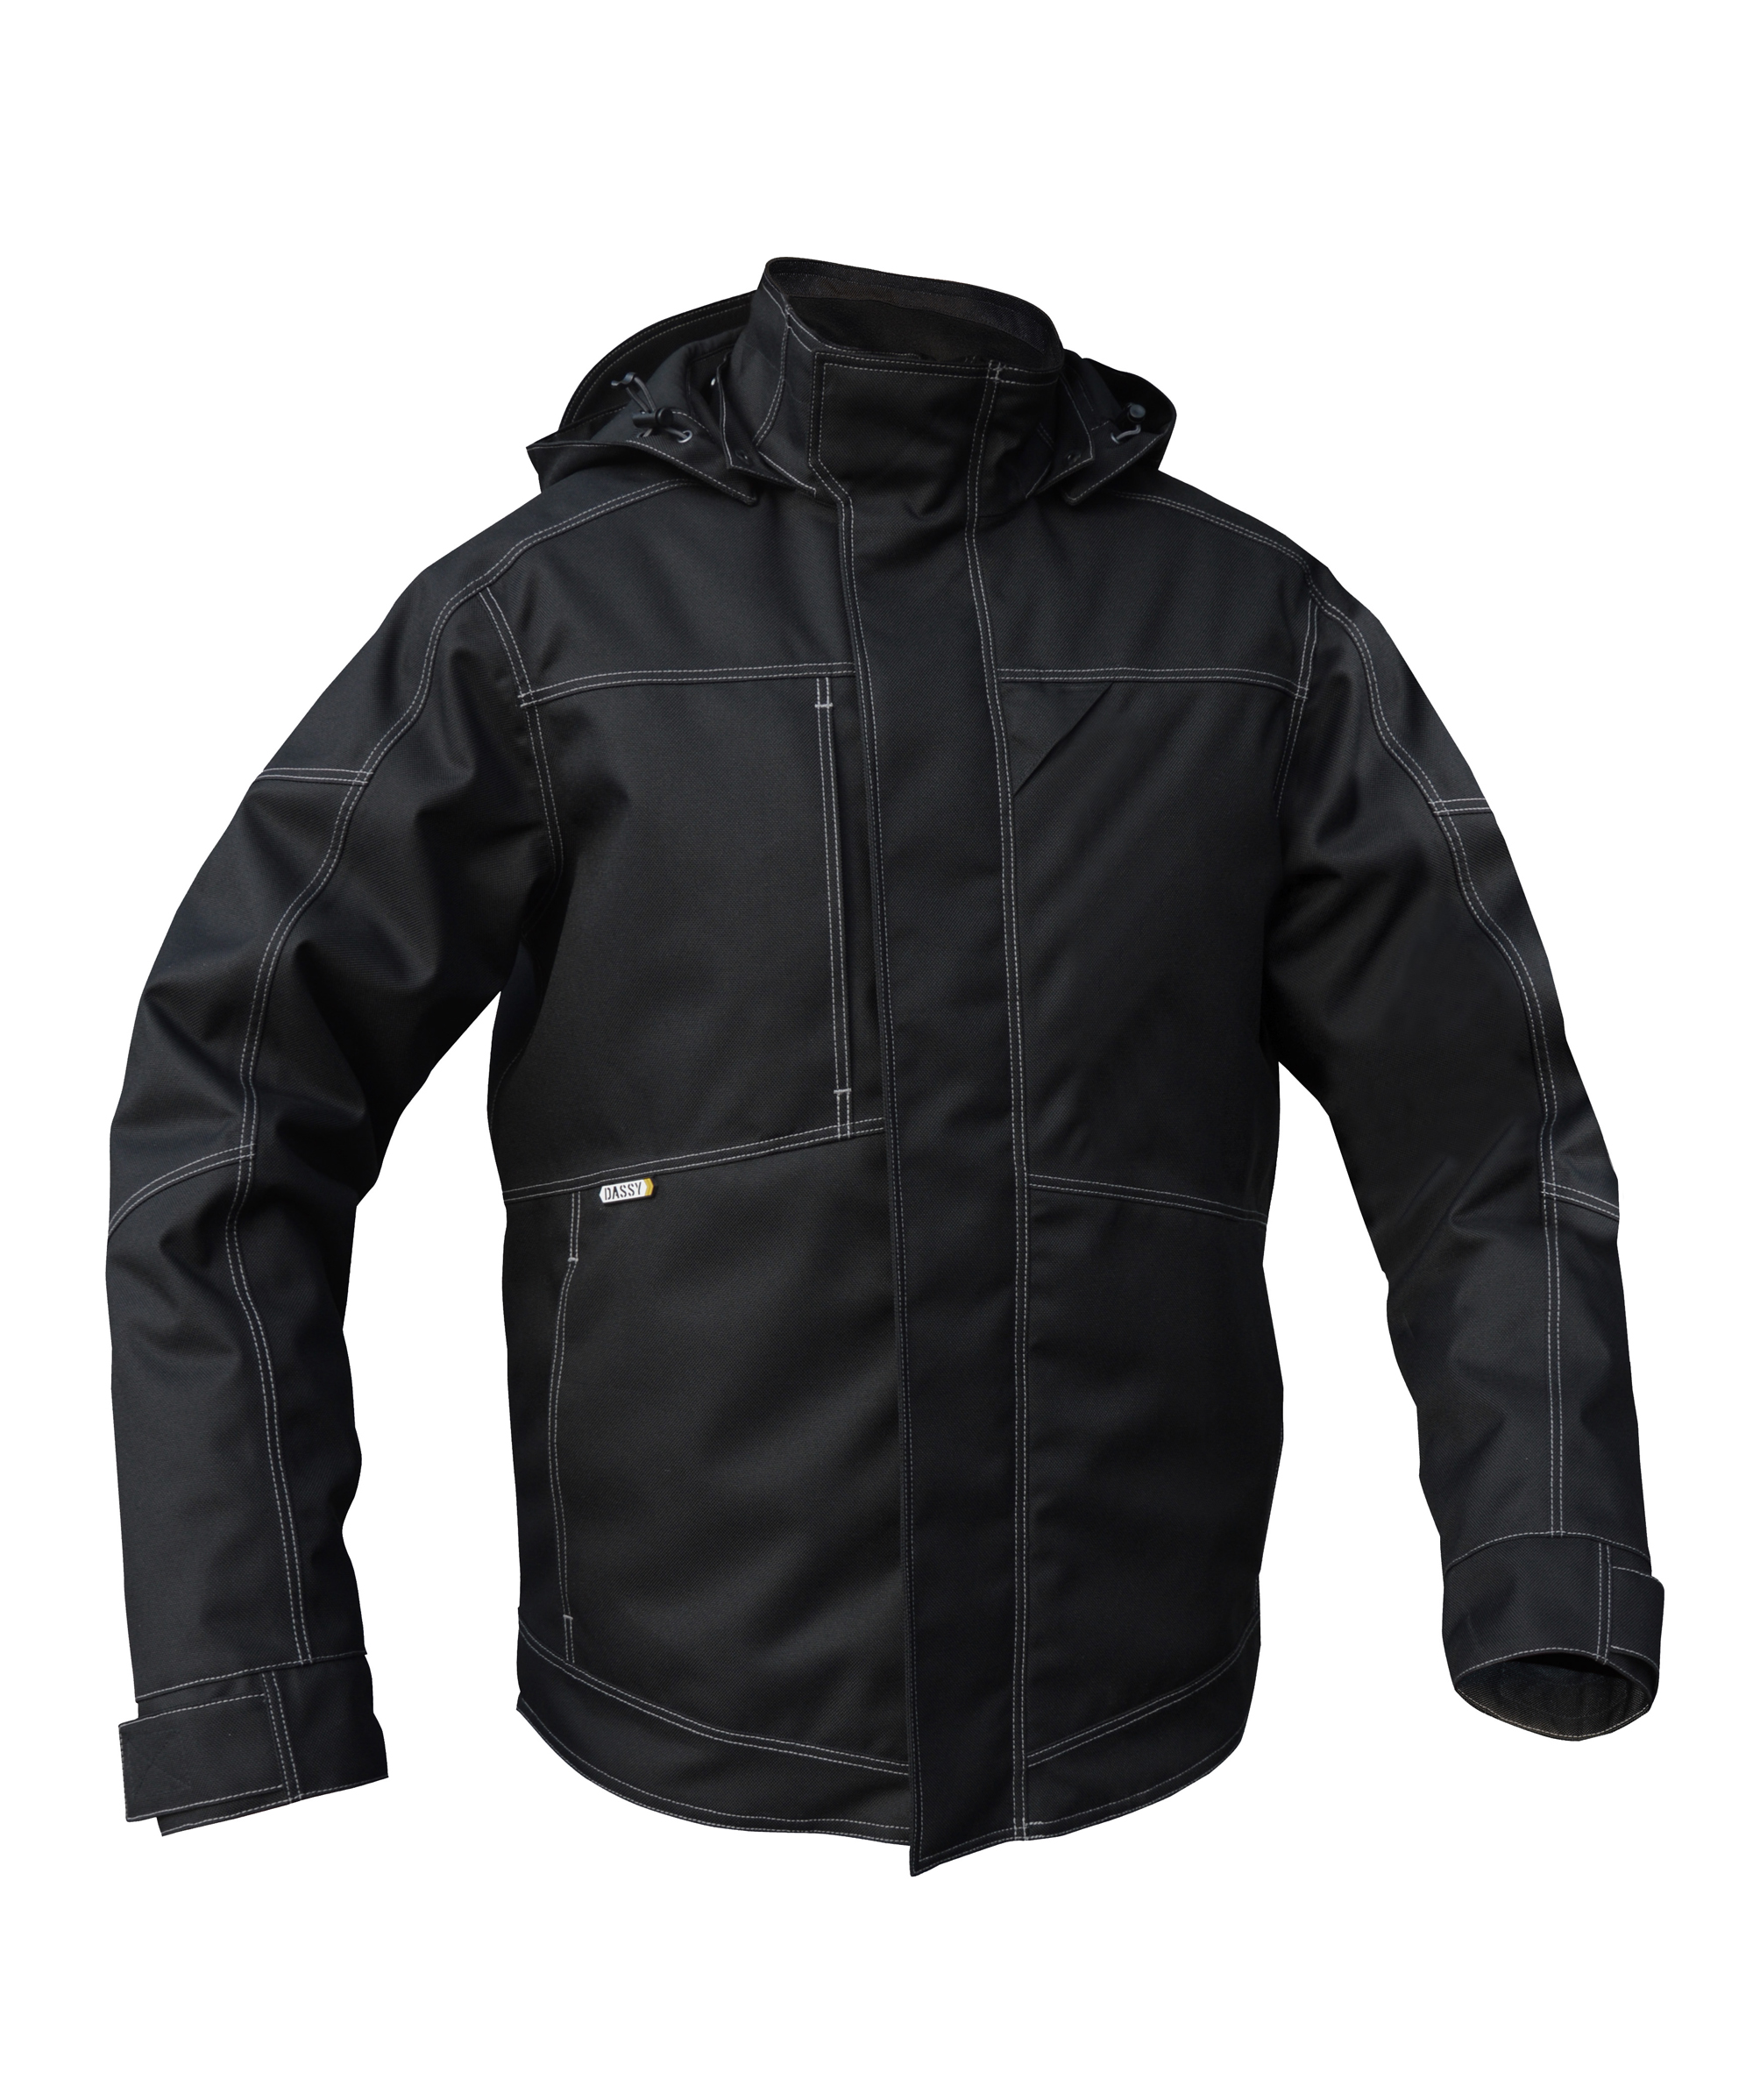 minsk_winter-jacket_black_front.jpg